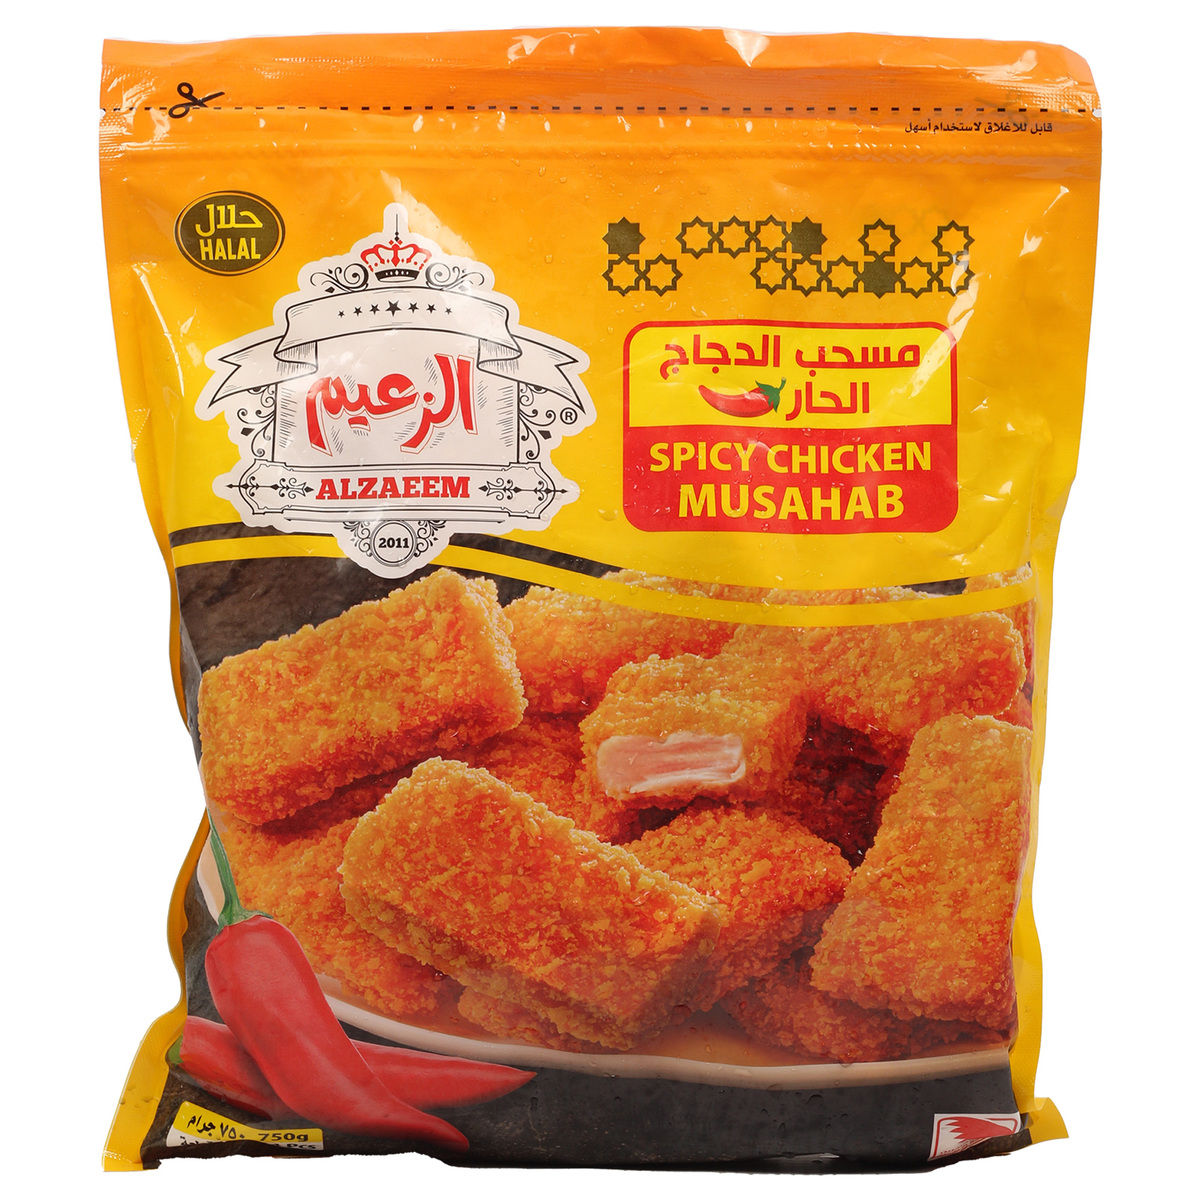 Al Zaeem Spicy Chicken Musahab 750g